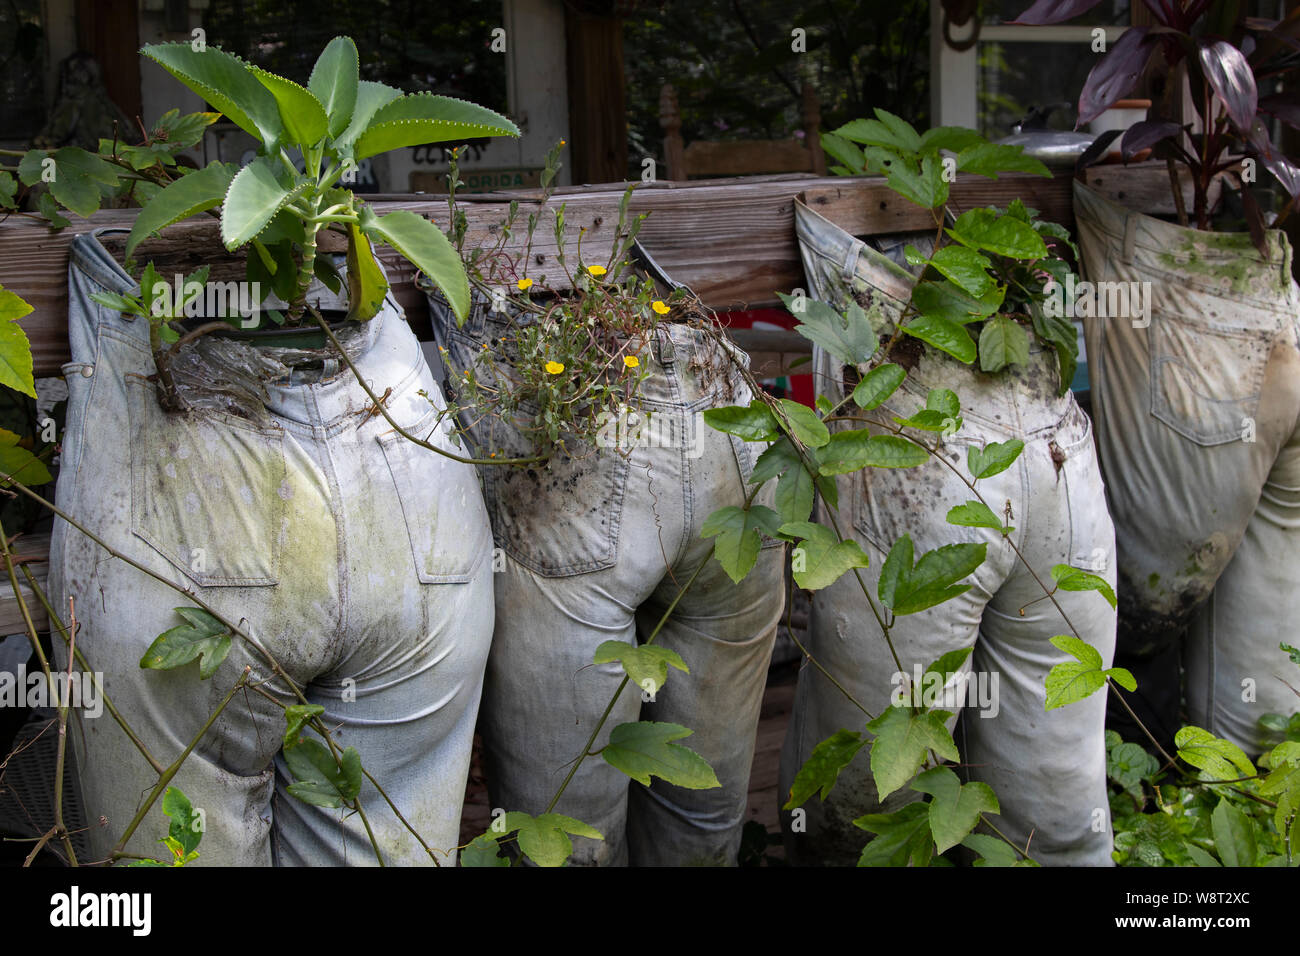 Humorvoll Foto der alten Hose mit Schmutz gefüllt und als Pflanzer auf dem Bauernhof verwendet. Stockfoto